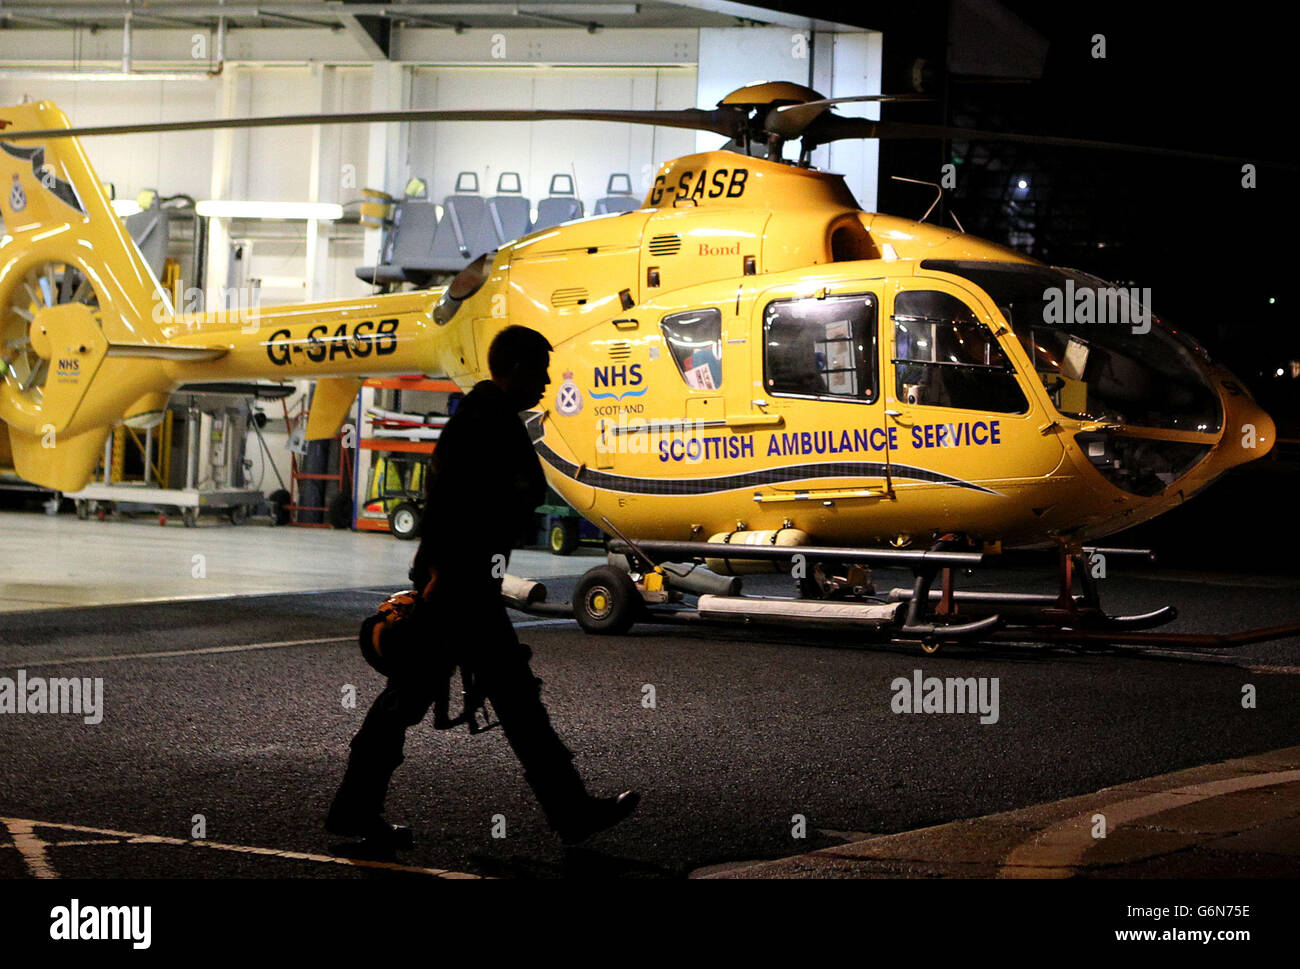 Un pilota passa accanto a un elicottero Scottish Ambulance Service nel suo hangar alla sua base presso l'eliporto di Glasgow City sul fiume Clyde dopo, restrizioni ereditate da Bond sulla polizia Scozia e gli elicotteri Scottish Ambulance Service. Foto Stock